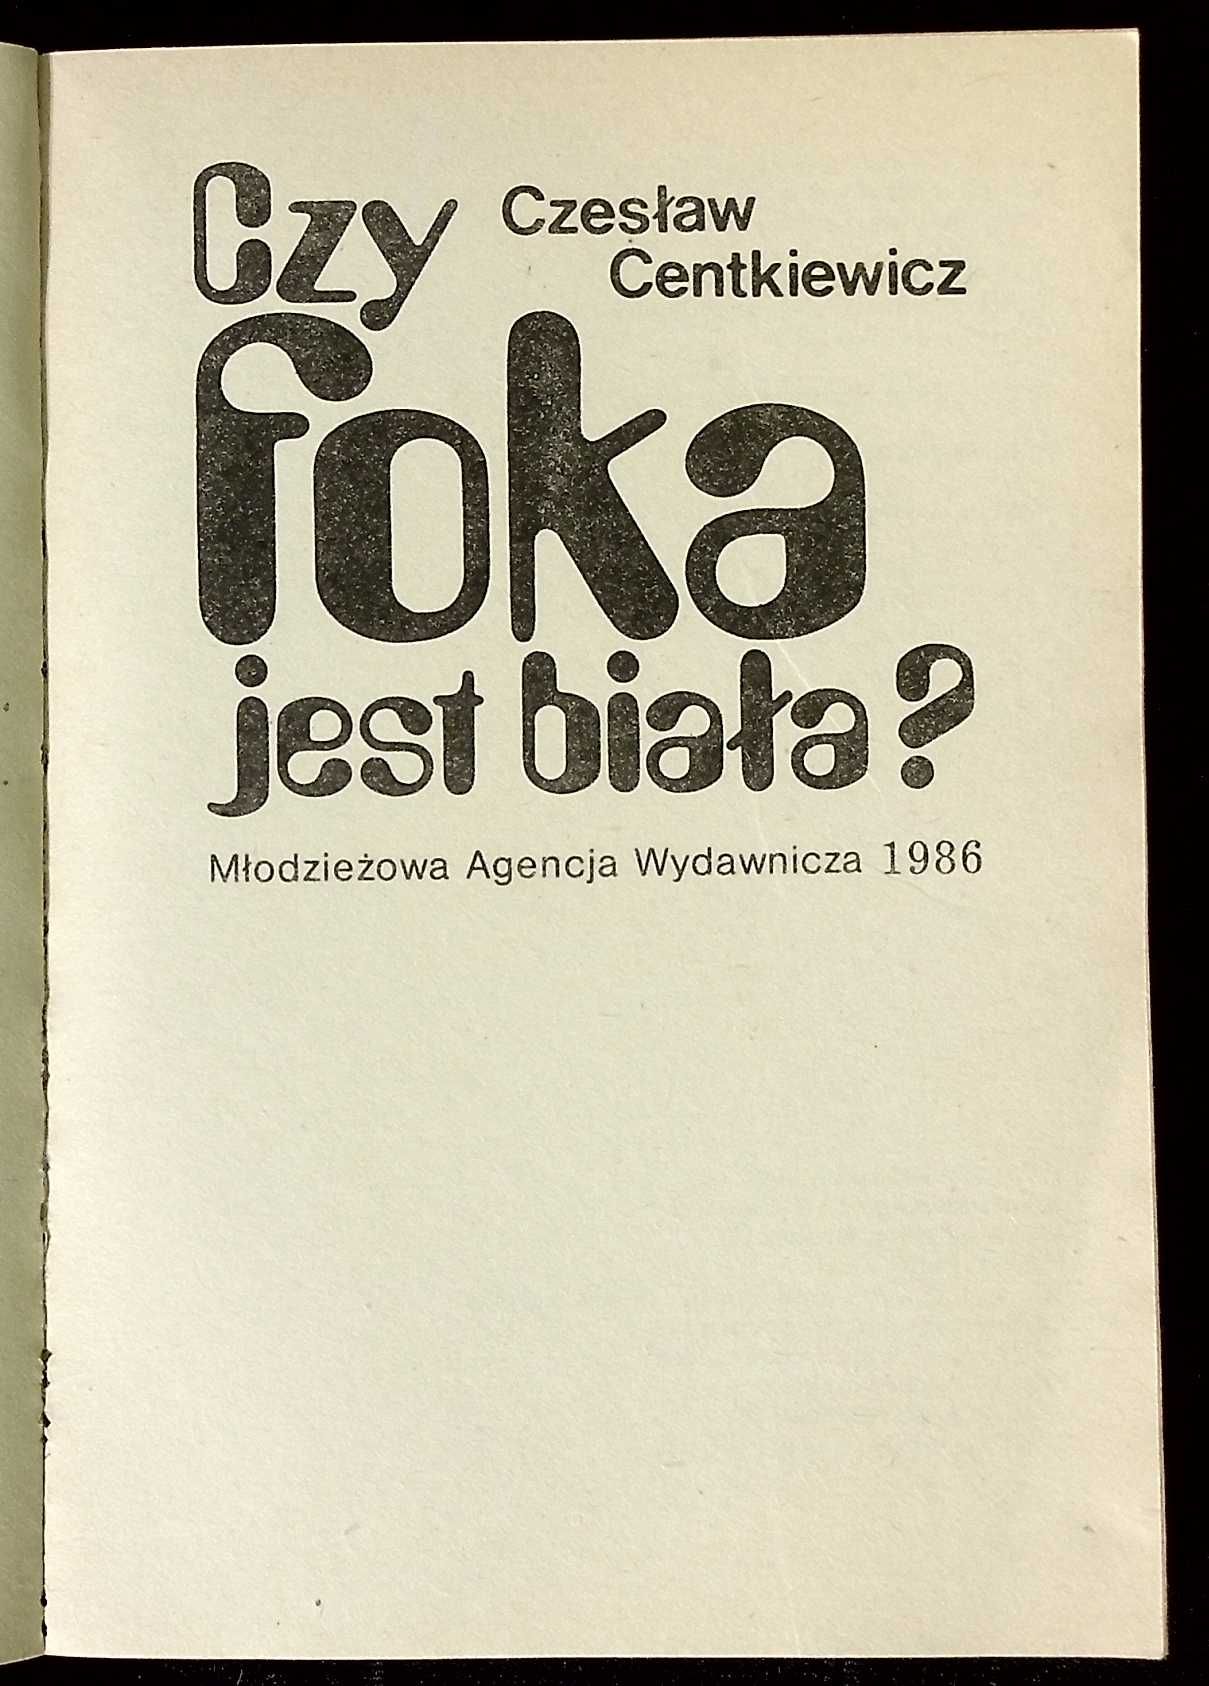 "Czy foka jest biała ?" - Czesław Cenckiewicz